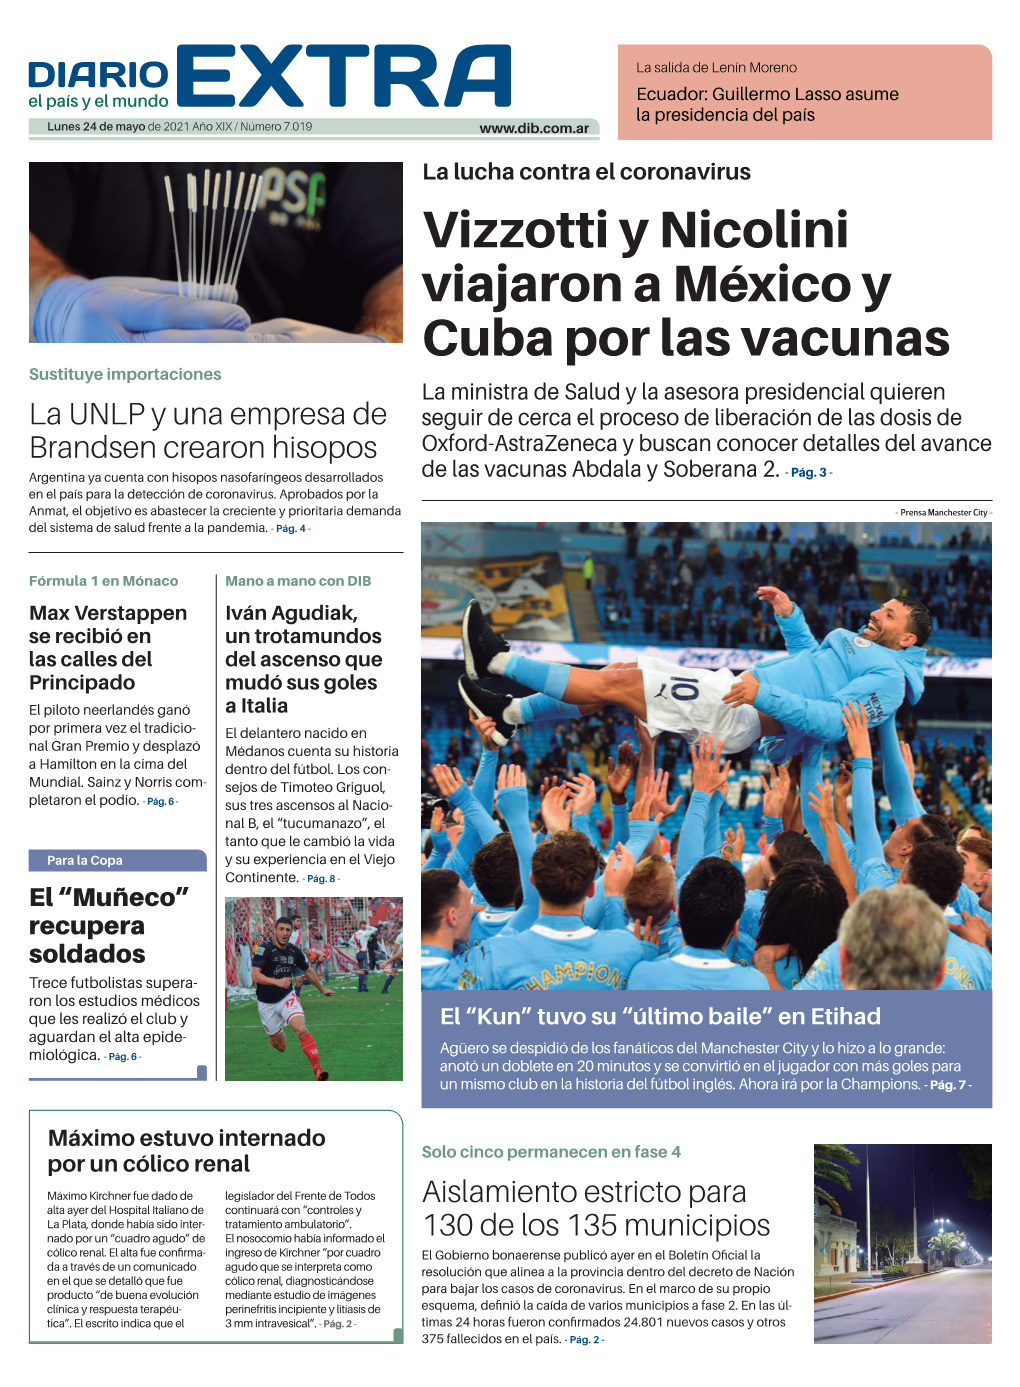 Vizzotti Y Nicolini Viajaron a México Y Cuba Por Las Vacunas